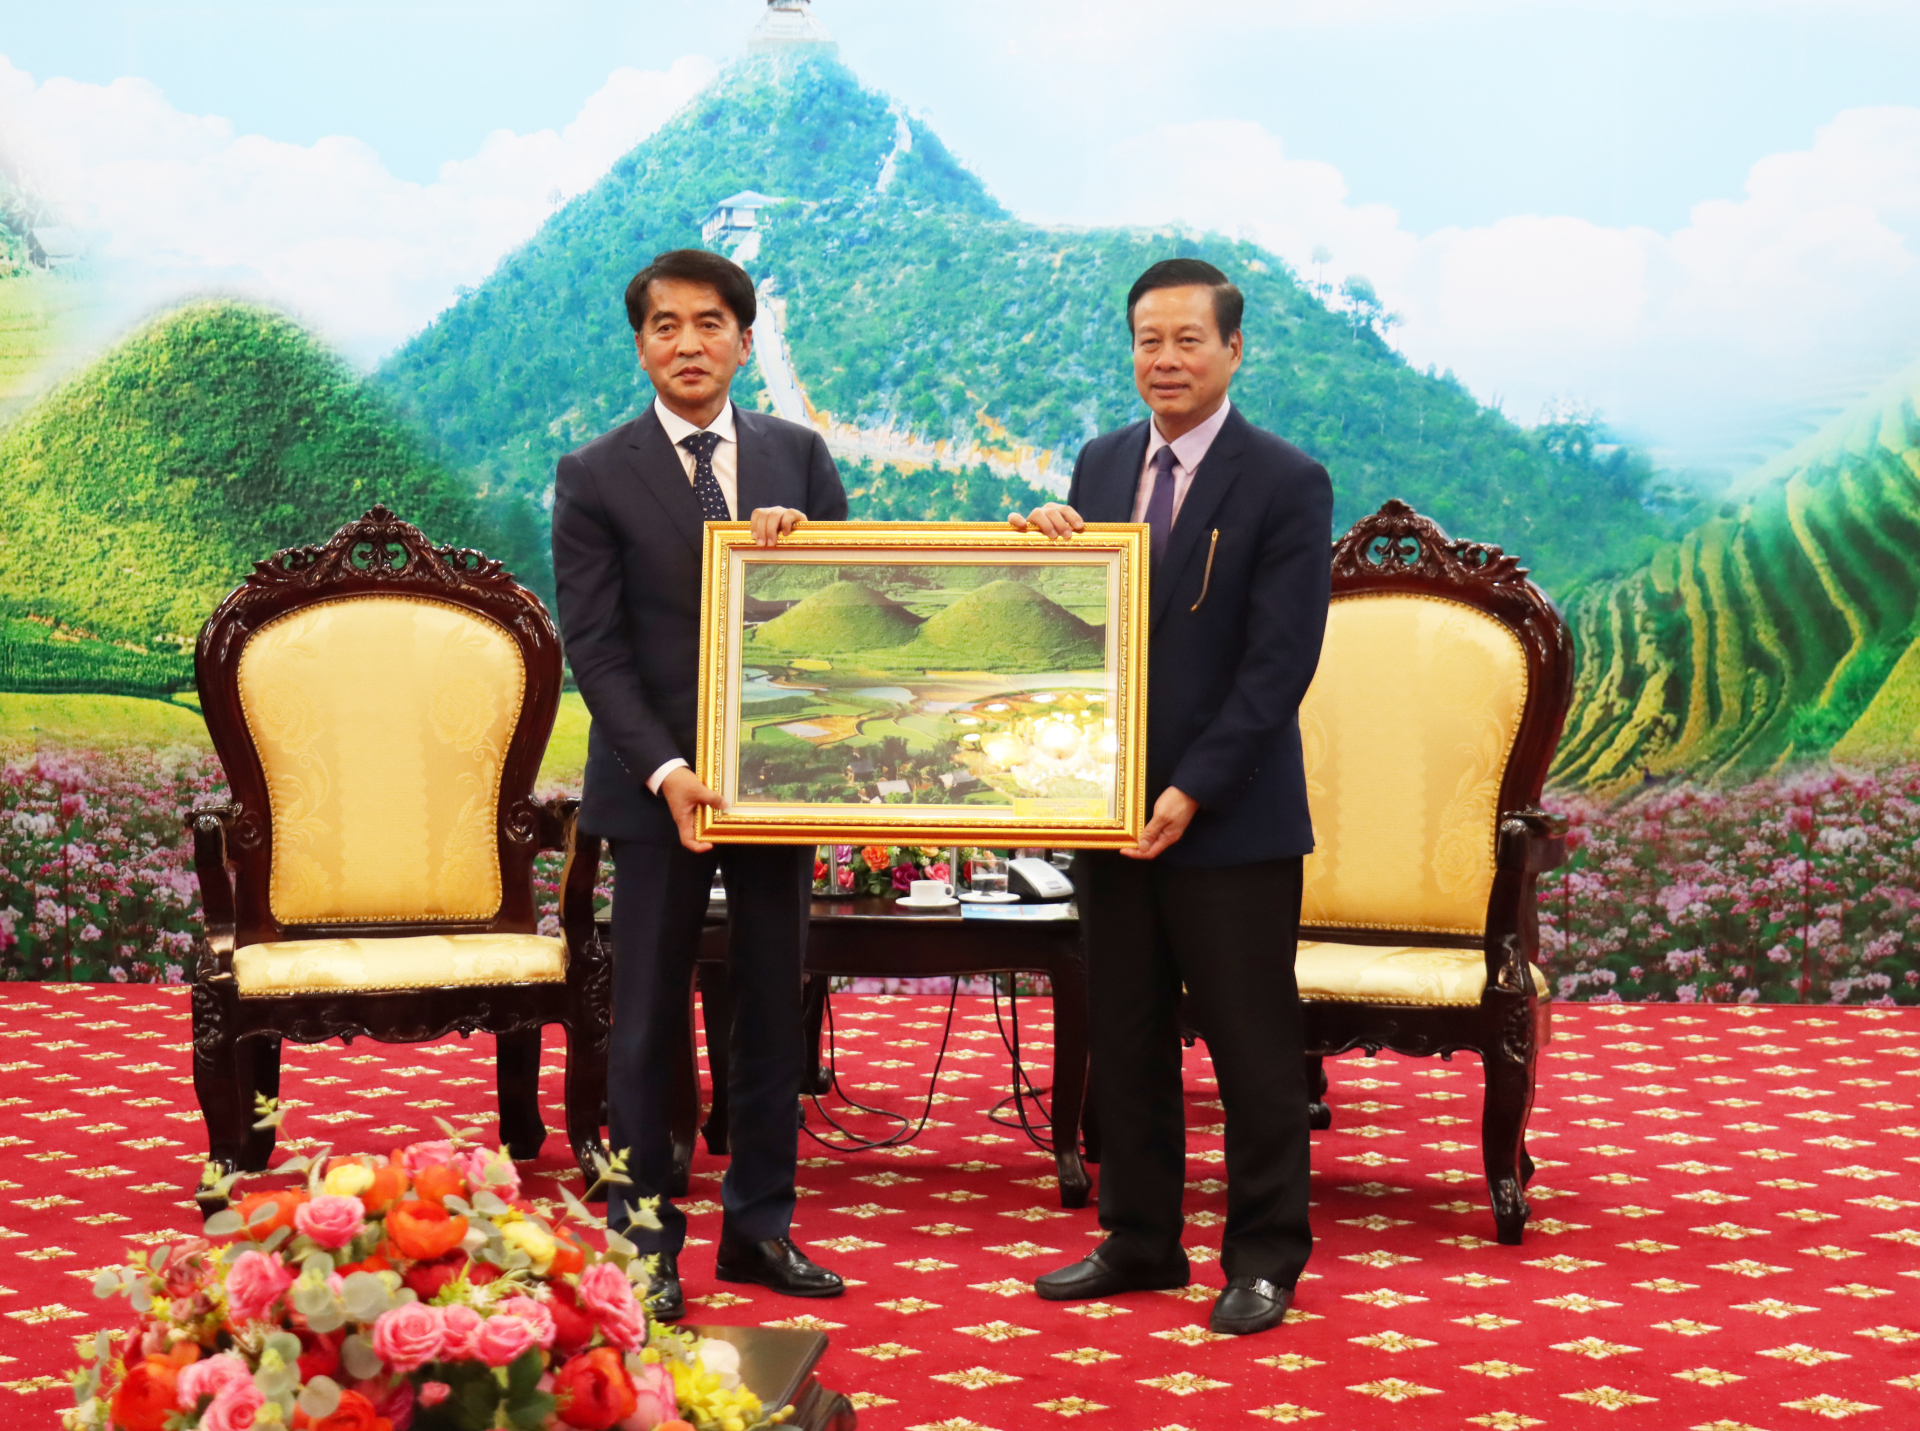 Chủ tịch UBND tỉnh Nguyễn Văn Sơn tặng bức tranh Núi đôi Quản Bạ cho ngài Jea Hyeong Choi, Quận trưởng quận Boeun.